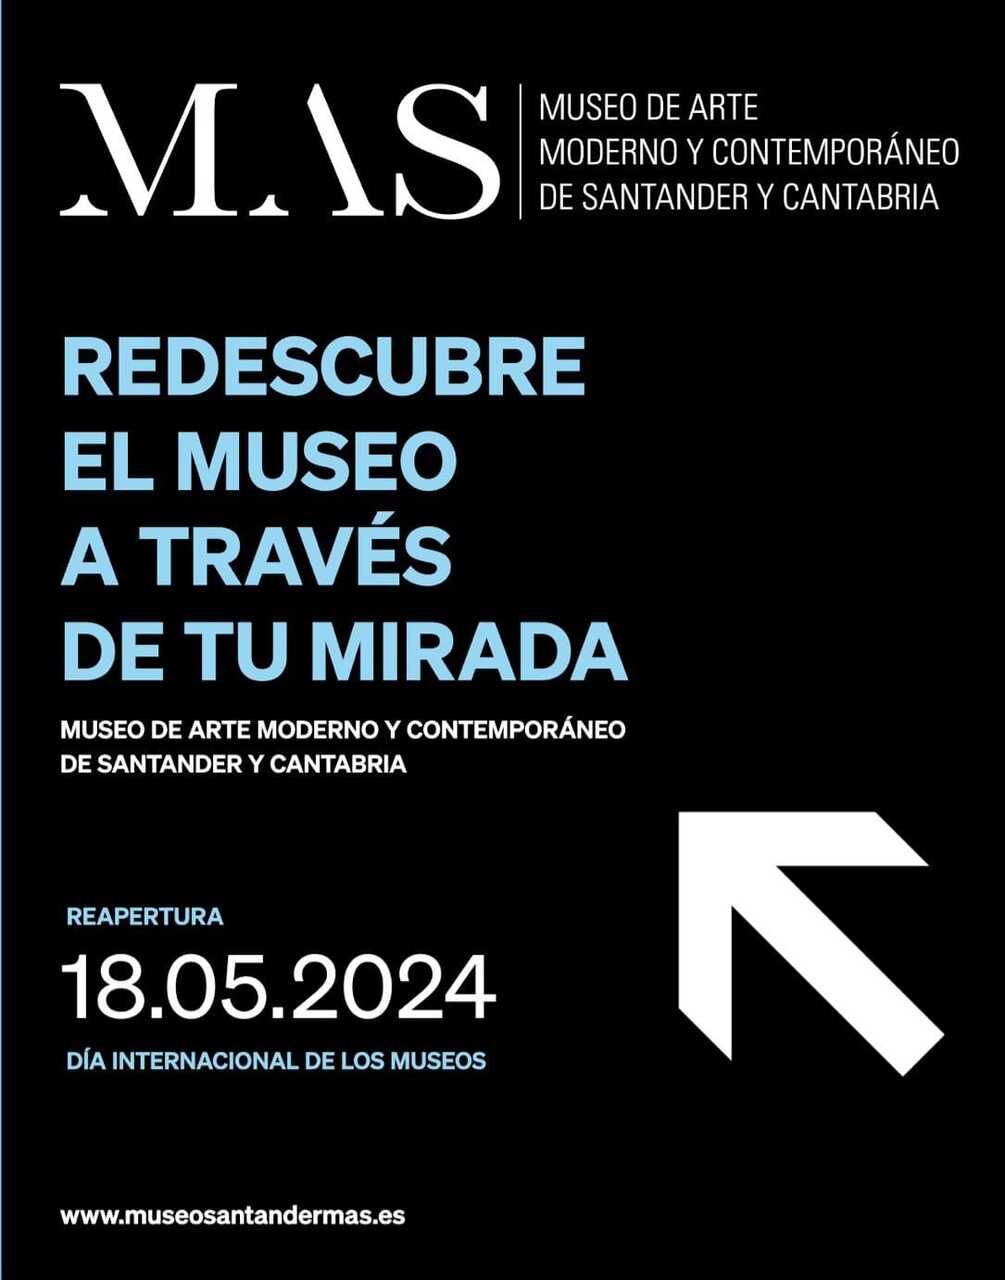 Museo de Arte Moderno y Contemporáneo de Santander